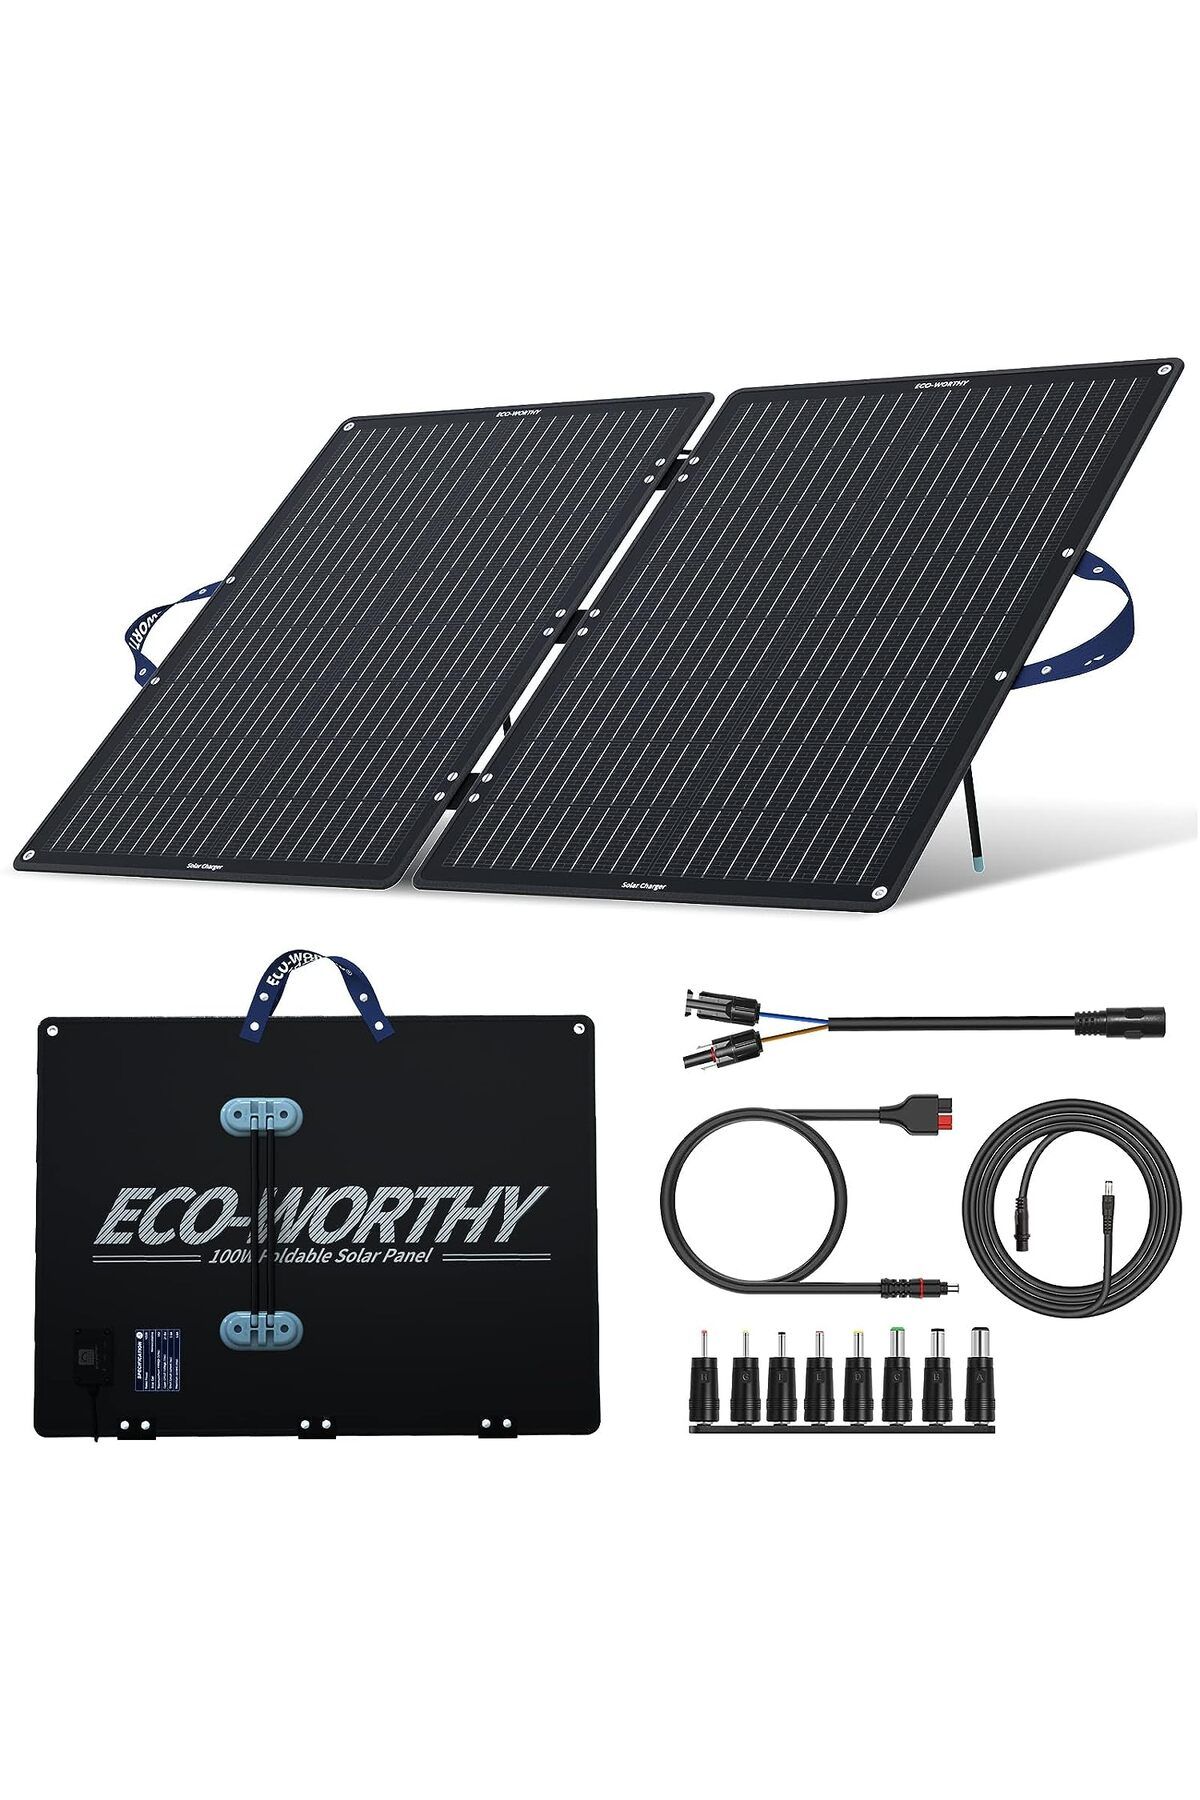 ECO-WORTHY 100W katlanabilir güneş paneli, 10 DC adaptörlü 12v güneş paneli, MC-4 ve 30°40° ayarlanabilir stand